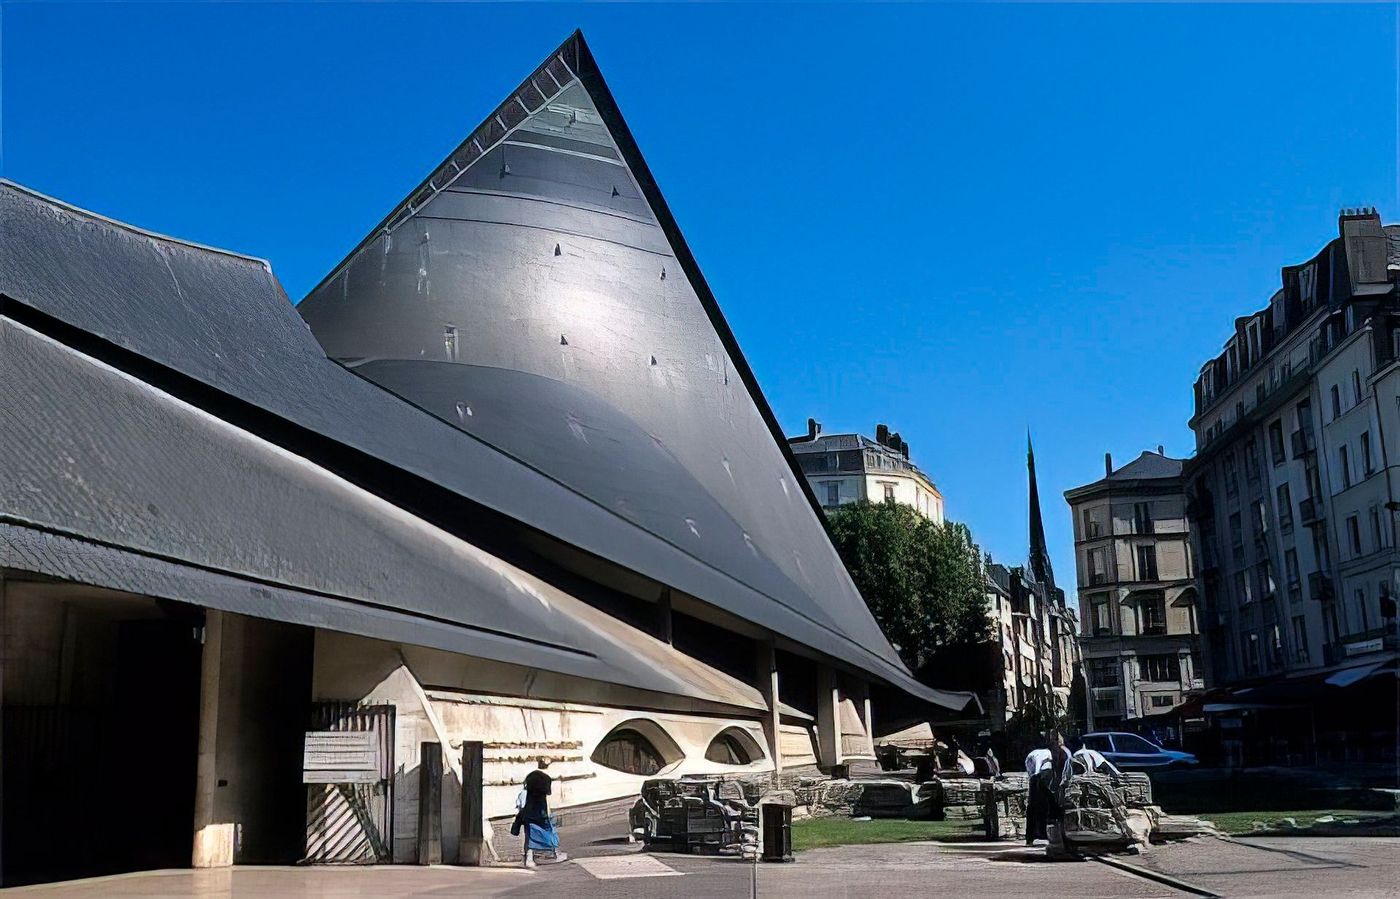 Eglise Ste-Jeanne d'Arc, place du Vieux Marché, Rouen